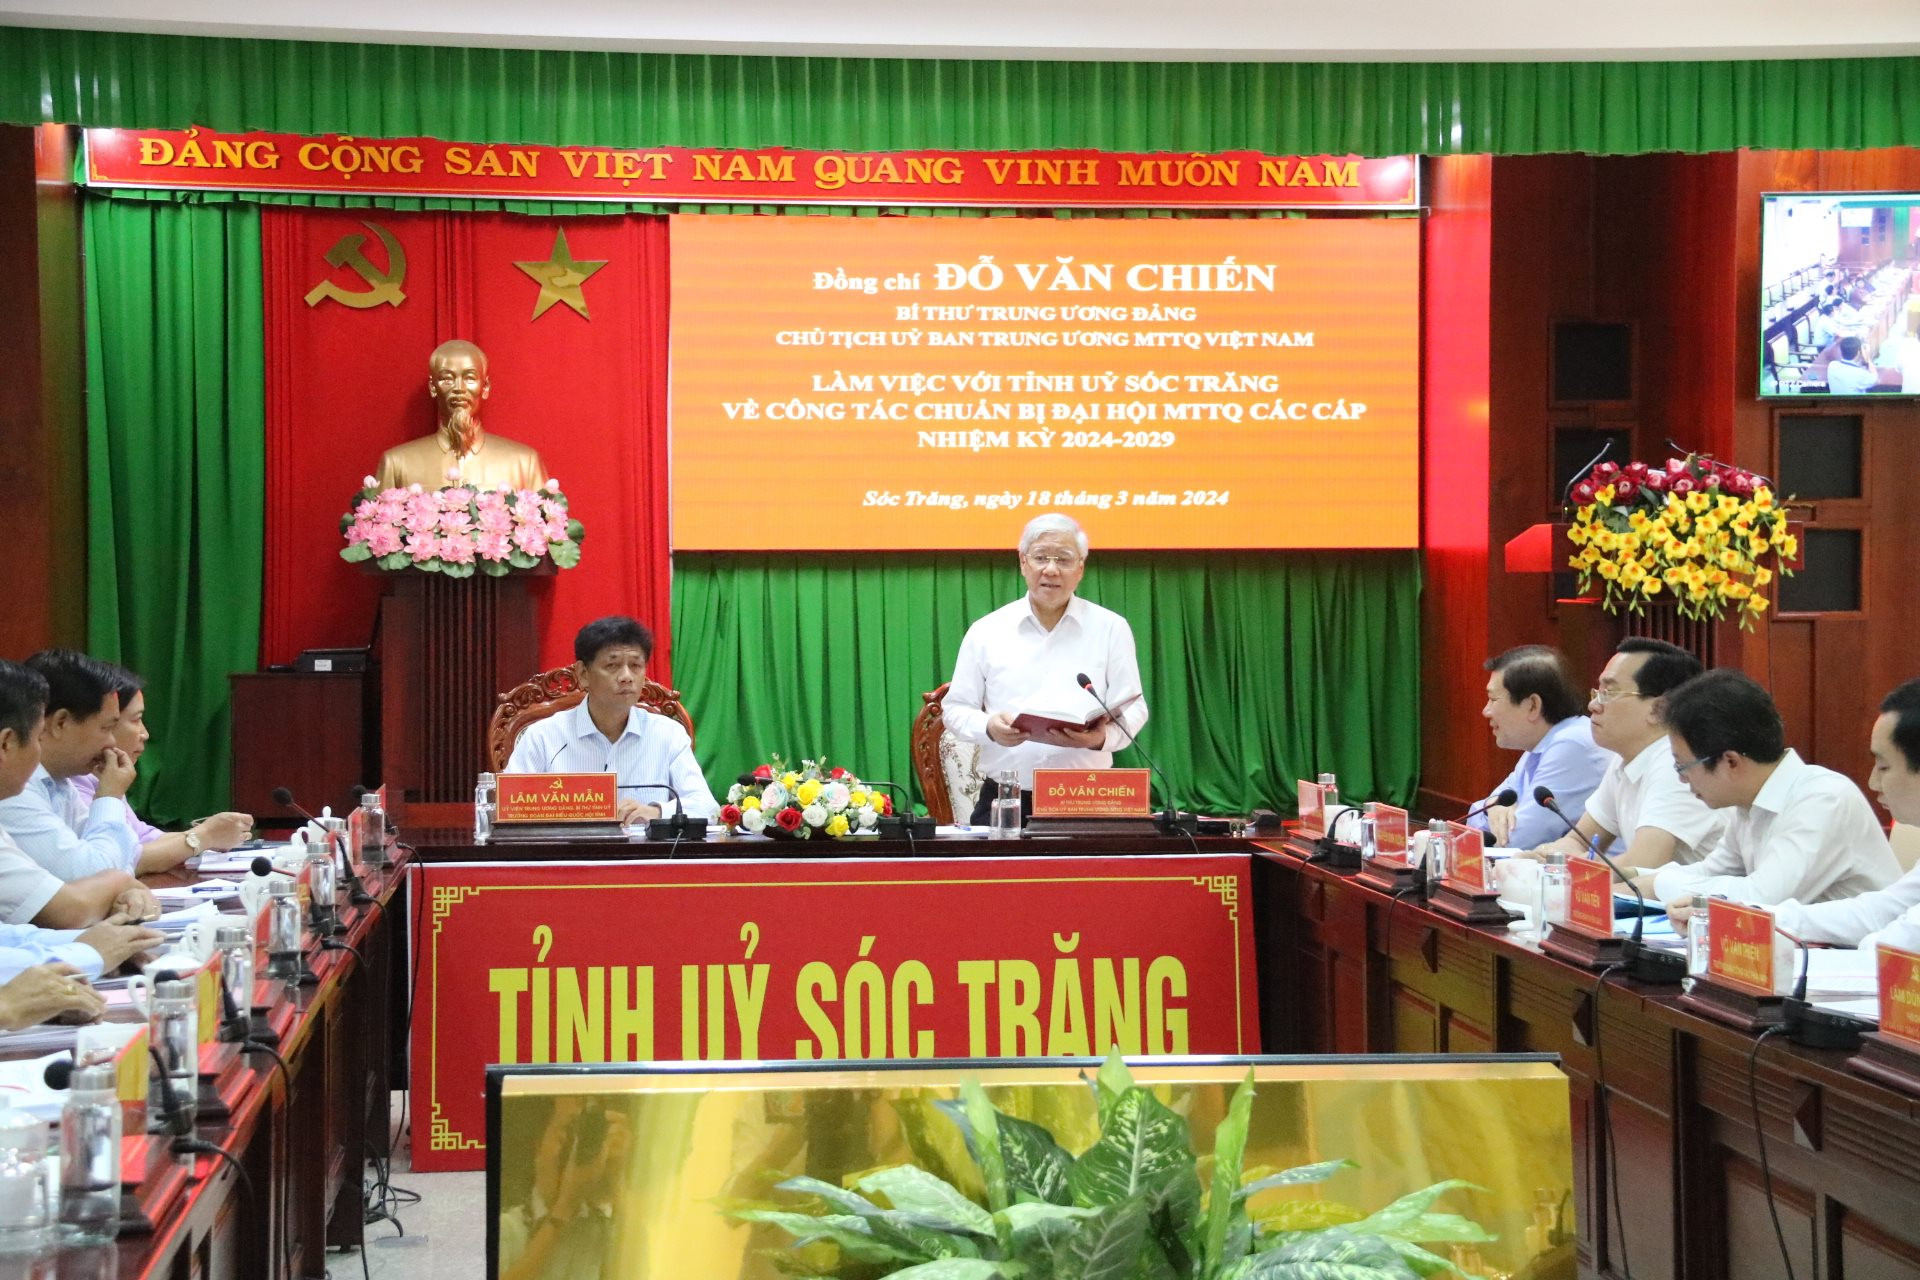 Bí thư Trung ương Đảng, Chủ tịch UBTƯ MTTQ Việt Nam Đỗ Văn Chiến đã làm việc với Tỉnh uỷ Sóc Trăng về công tác chuẩn bị Đại hội MTTQ Việt Nam các cấp, nhiệm kỳ 2024-2029.